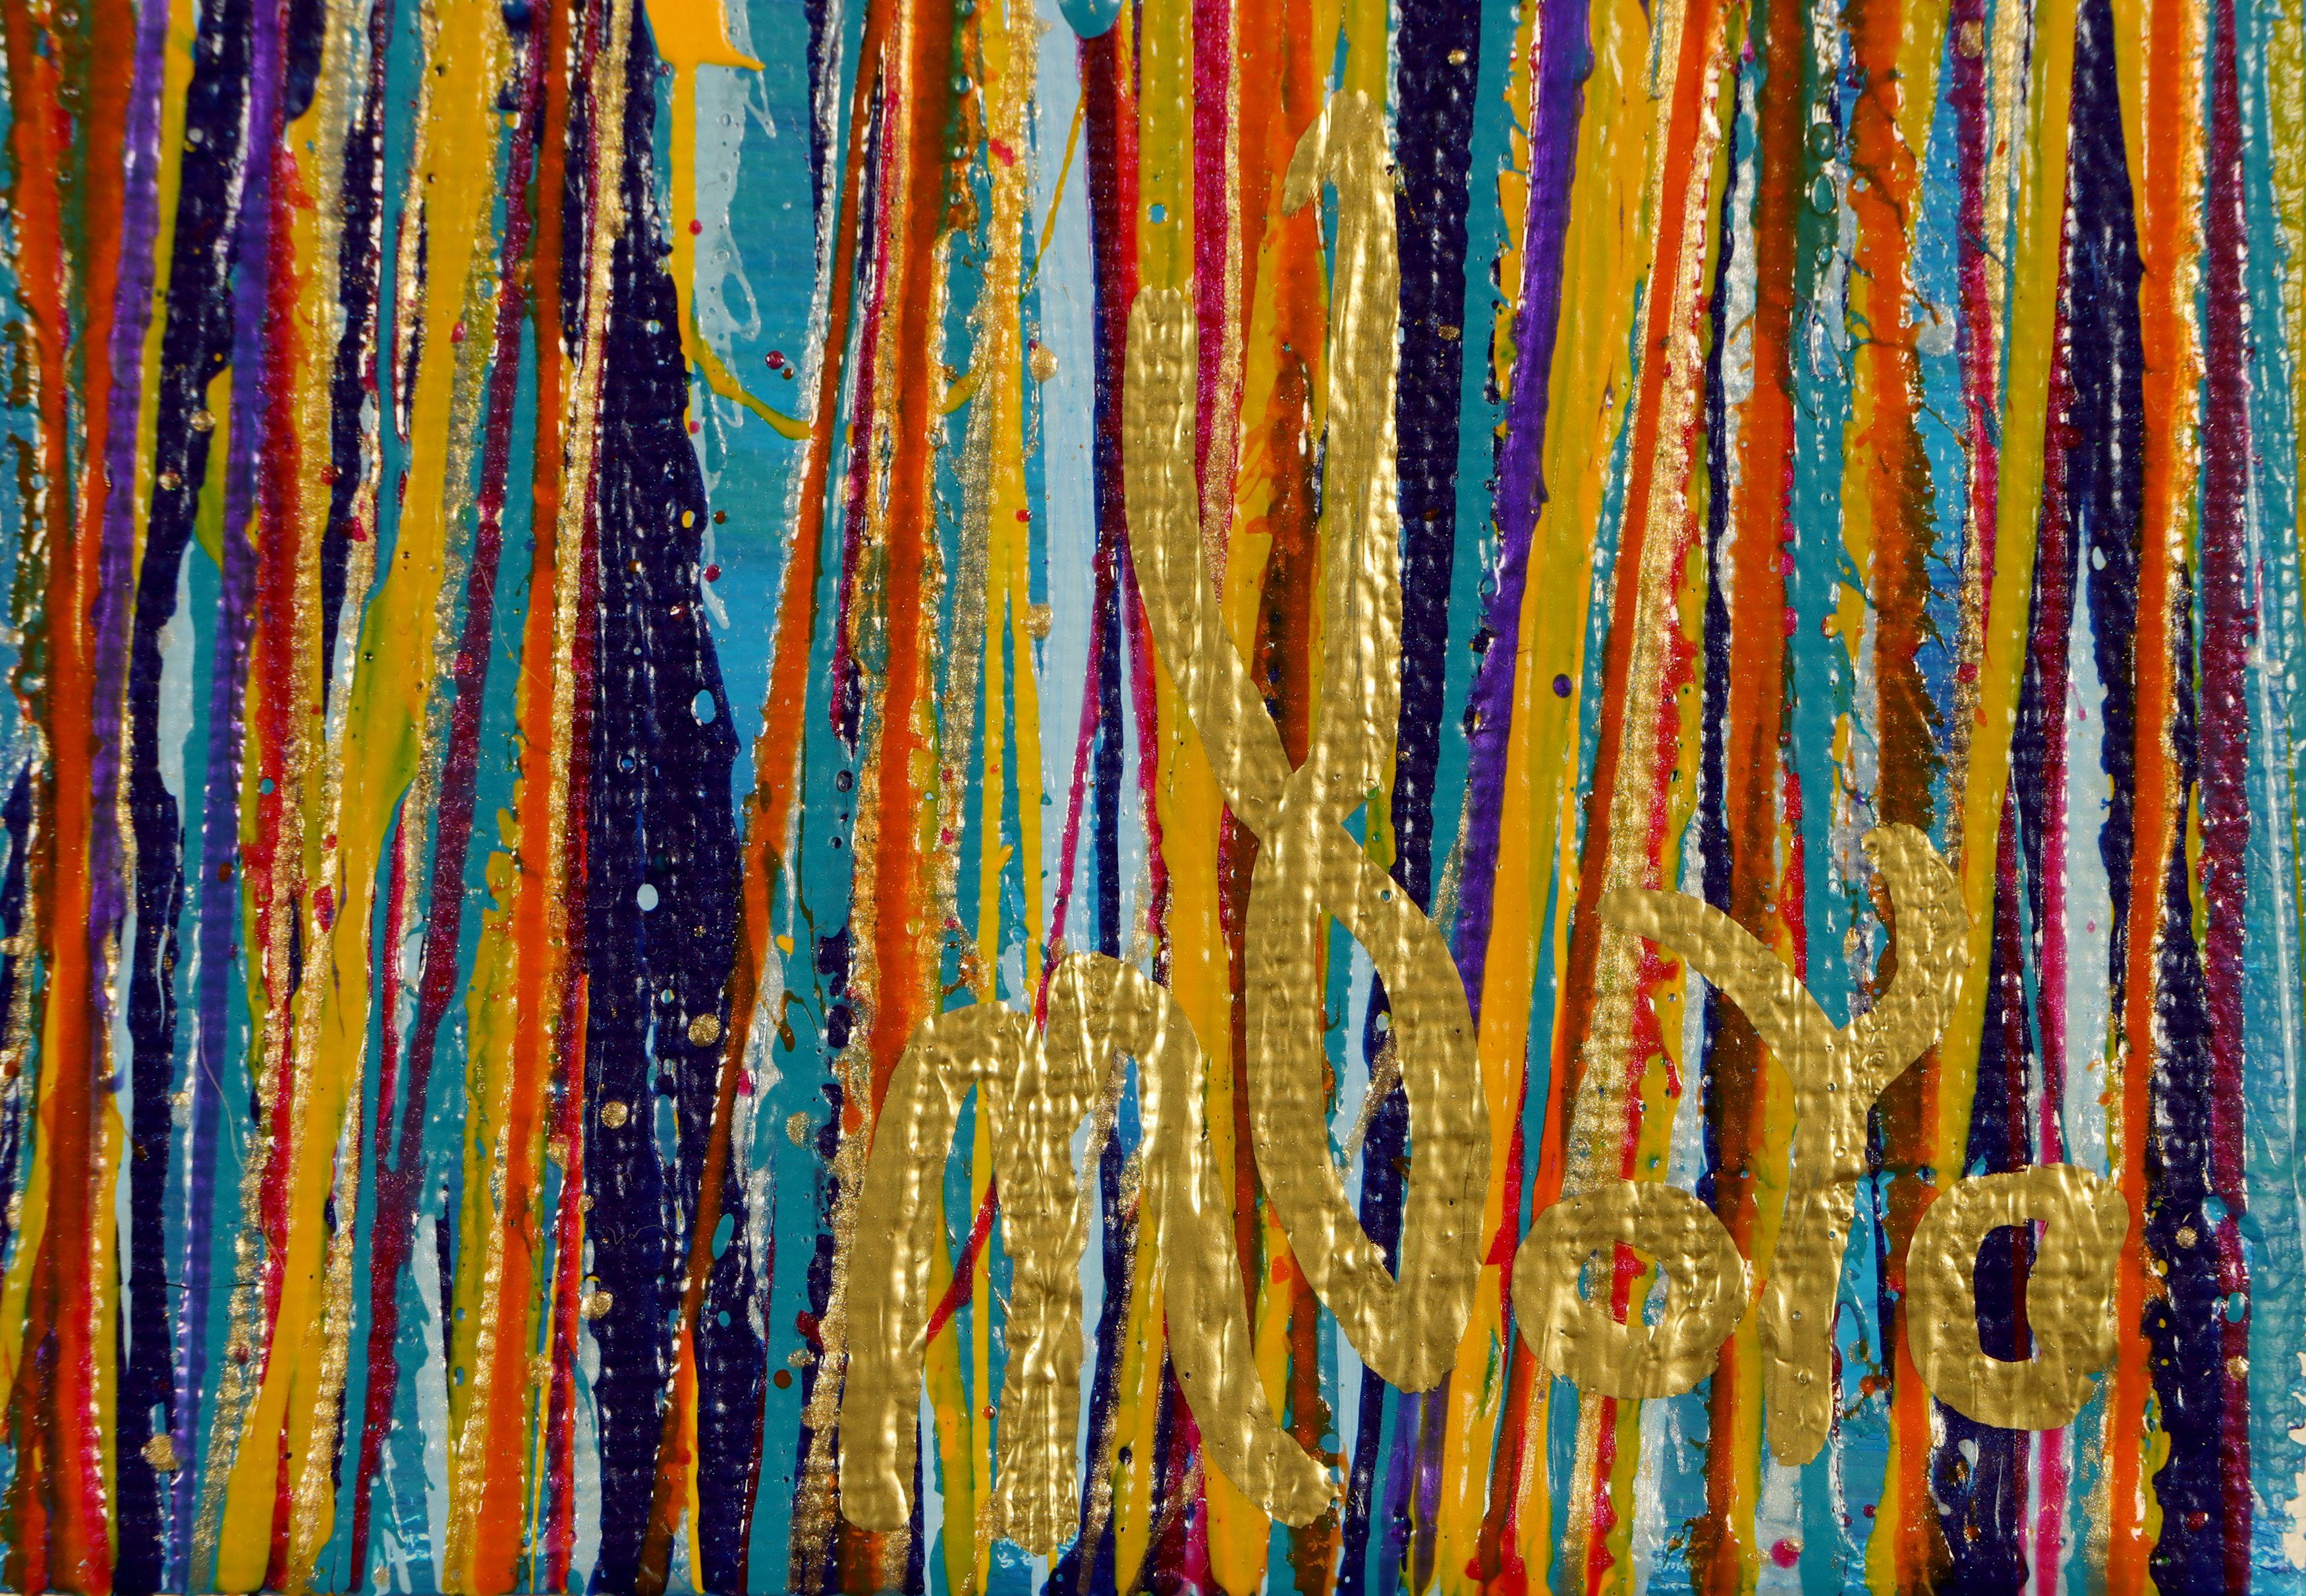 Cet abstrait moderne radieux a été créé en mélangeant des gouttes irisées de peinture acrylique dans un motif aléatoire mais apaisant.      Une palette de couleurs composée de violet, de bleu, de jaune et de bleu de prusse, la plupart des couleurs